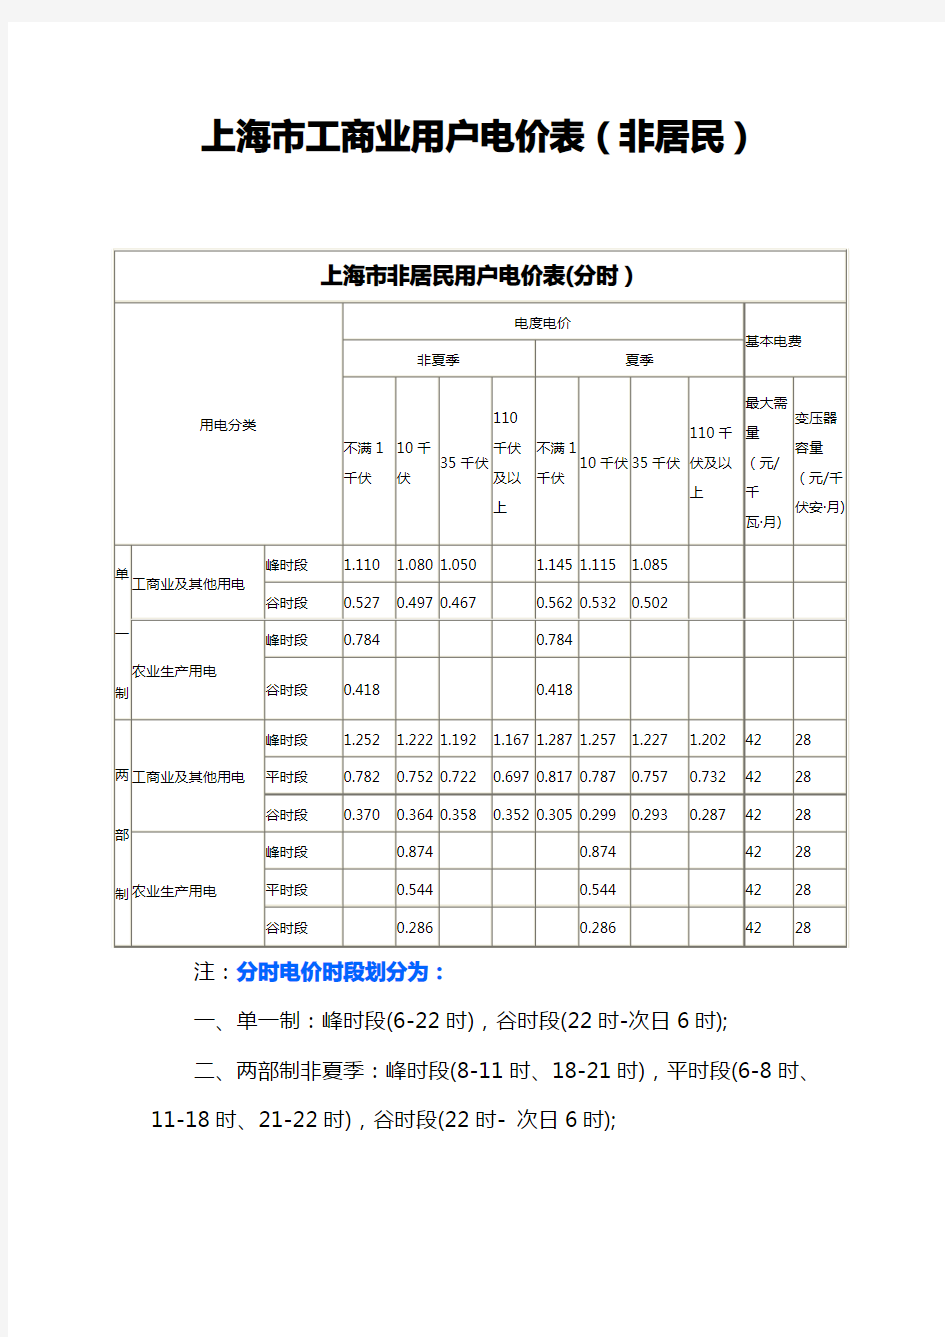 上海市工商业用户电价表(非居民)